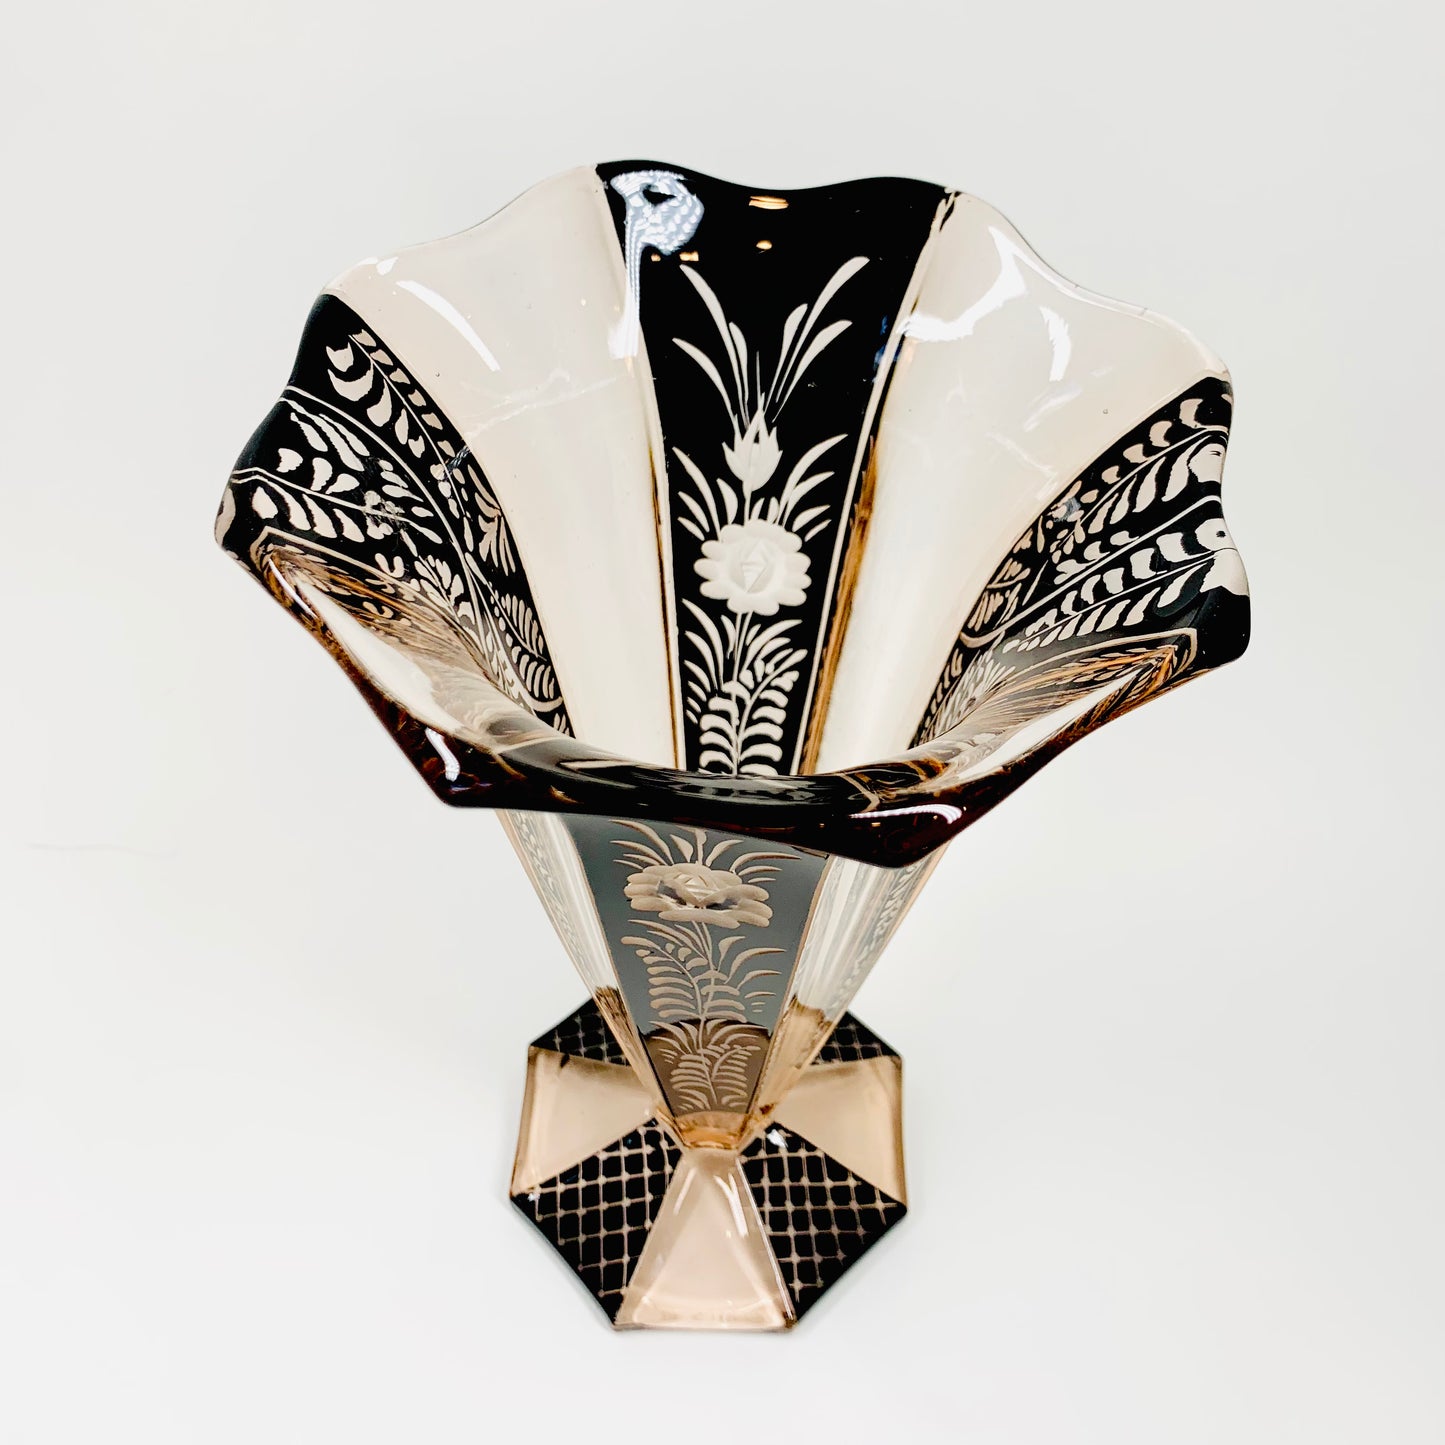 Antique Art Nouveau pink and black enamel glass vase by Karl Palda